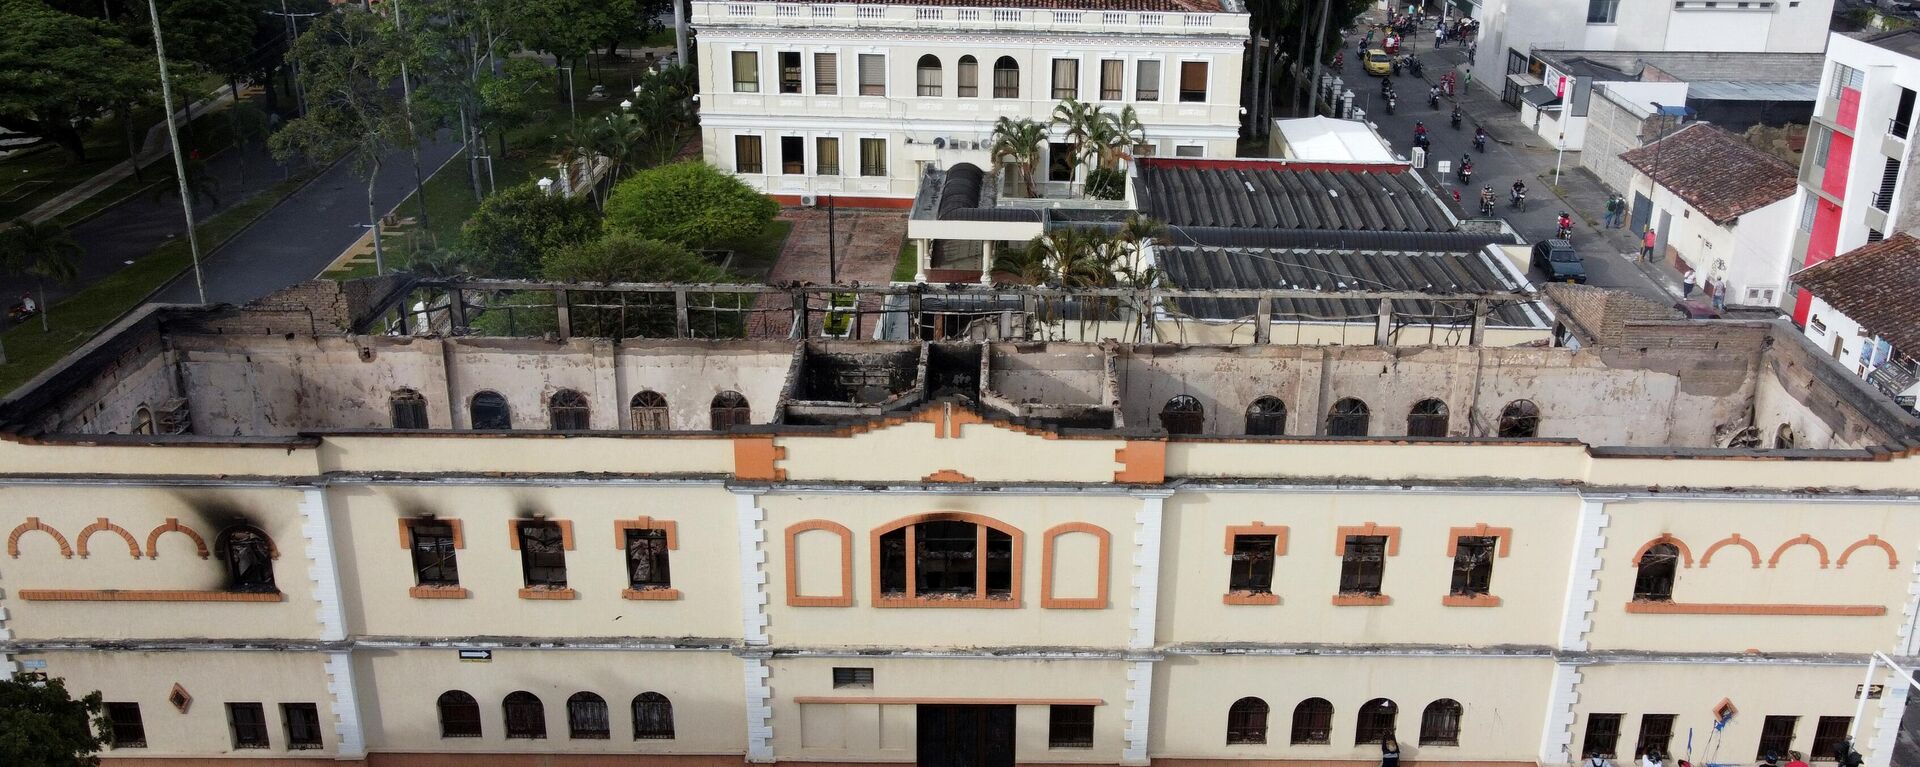 El Palacio de Justicia de Tuluá, en Colombia, fue incendiado en medio de protestas a nivel nacional - Sputnik Mundo, 1920, 28.05.2021